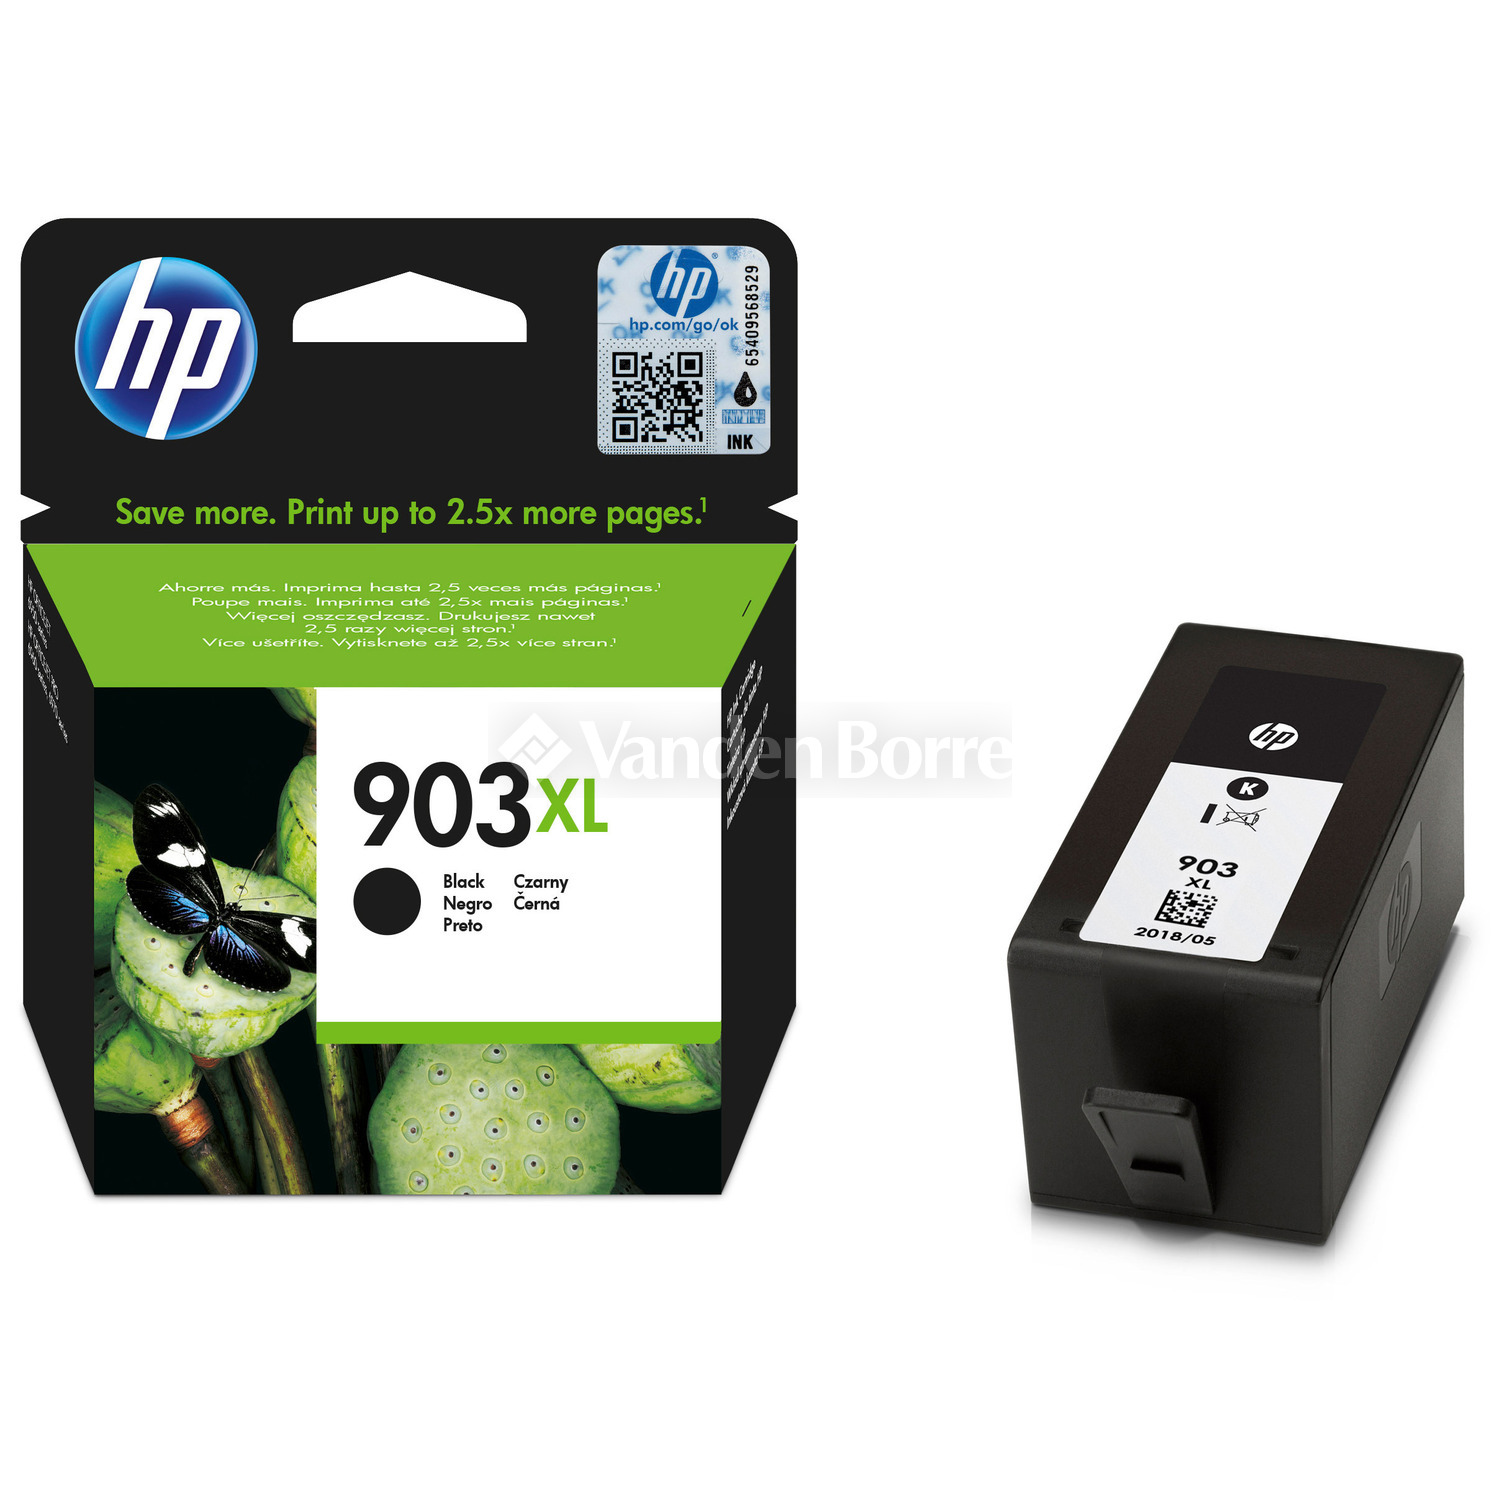 Verleiding hoog Noord HP INKTCARTRIDGE 903XL BLACK - HP Instant Ink | Vanden Borre